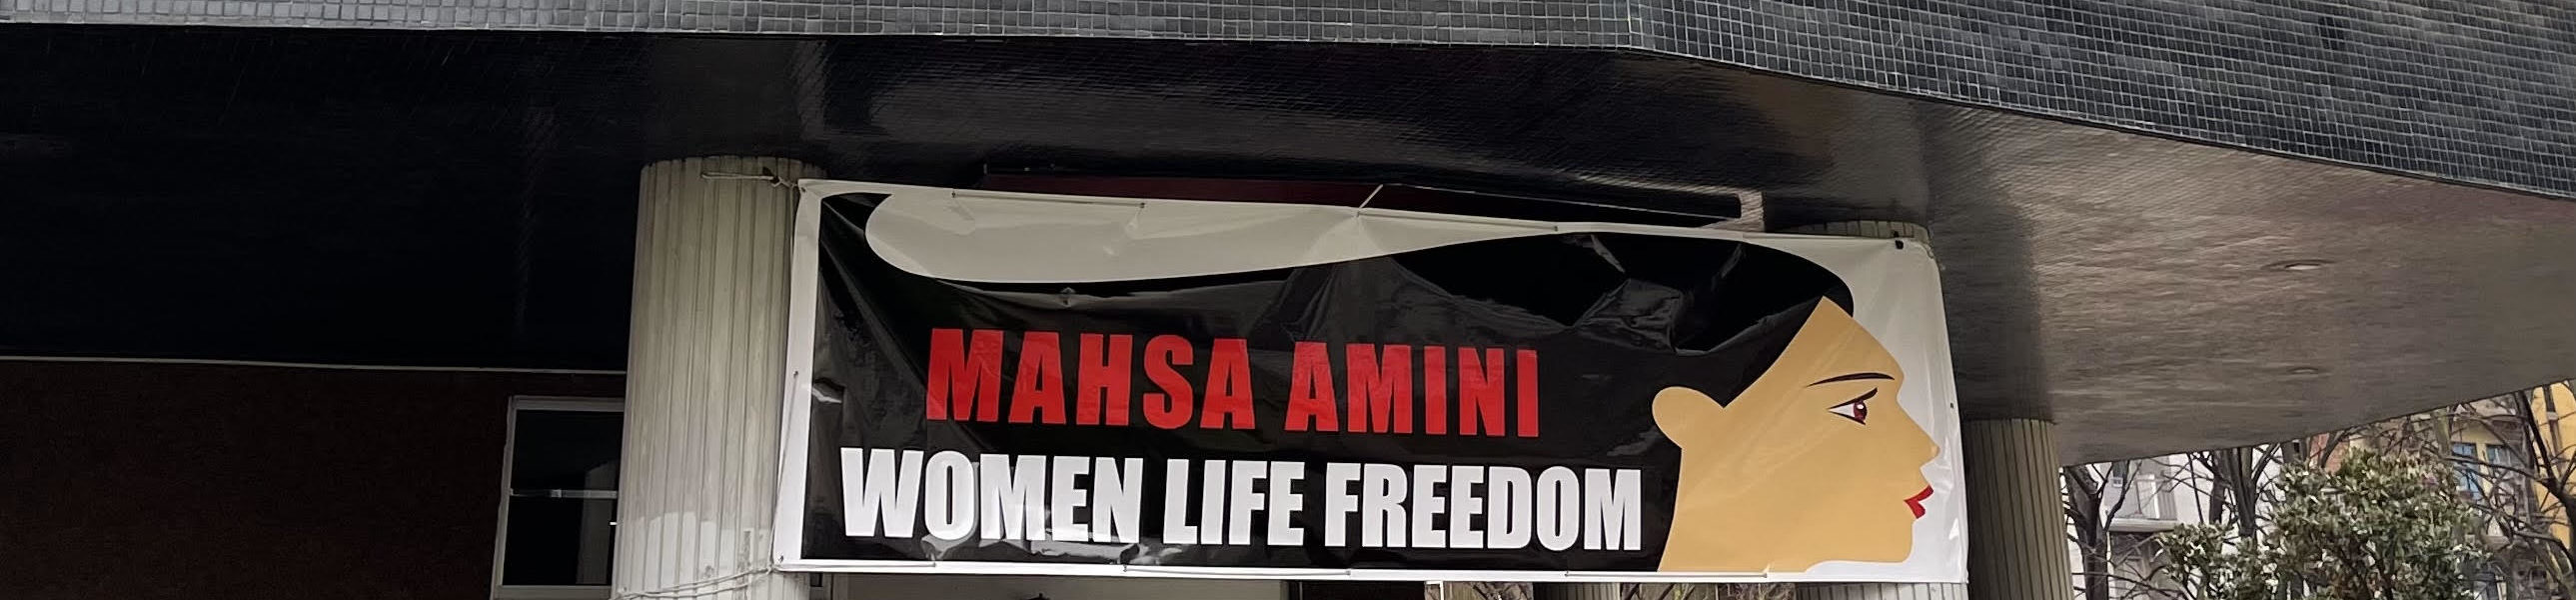 Mahsa Amini - Woman Life Freedom - striscione fuori da Comune